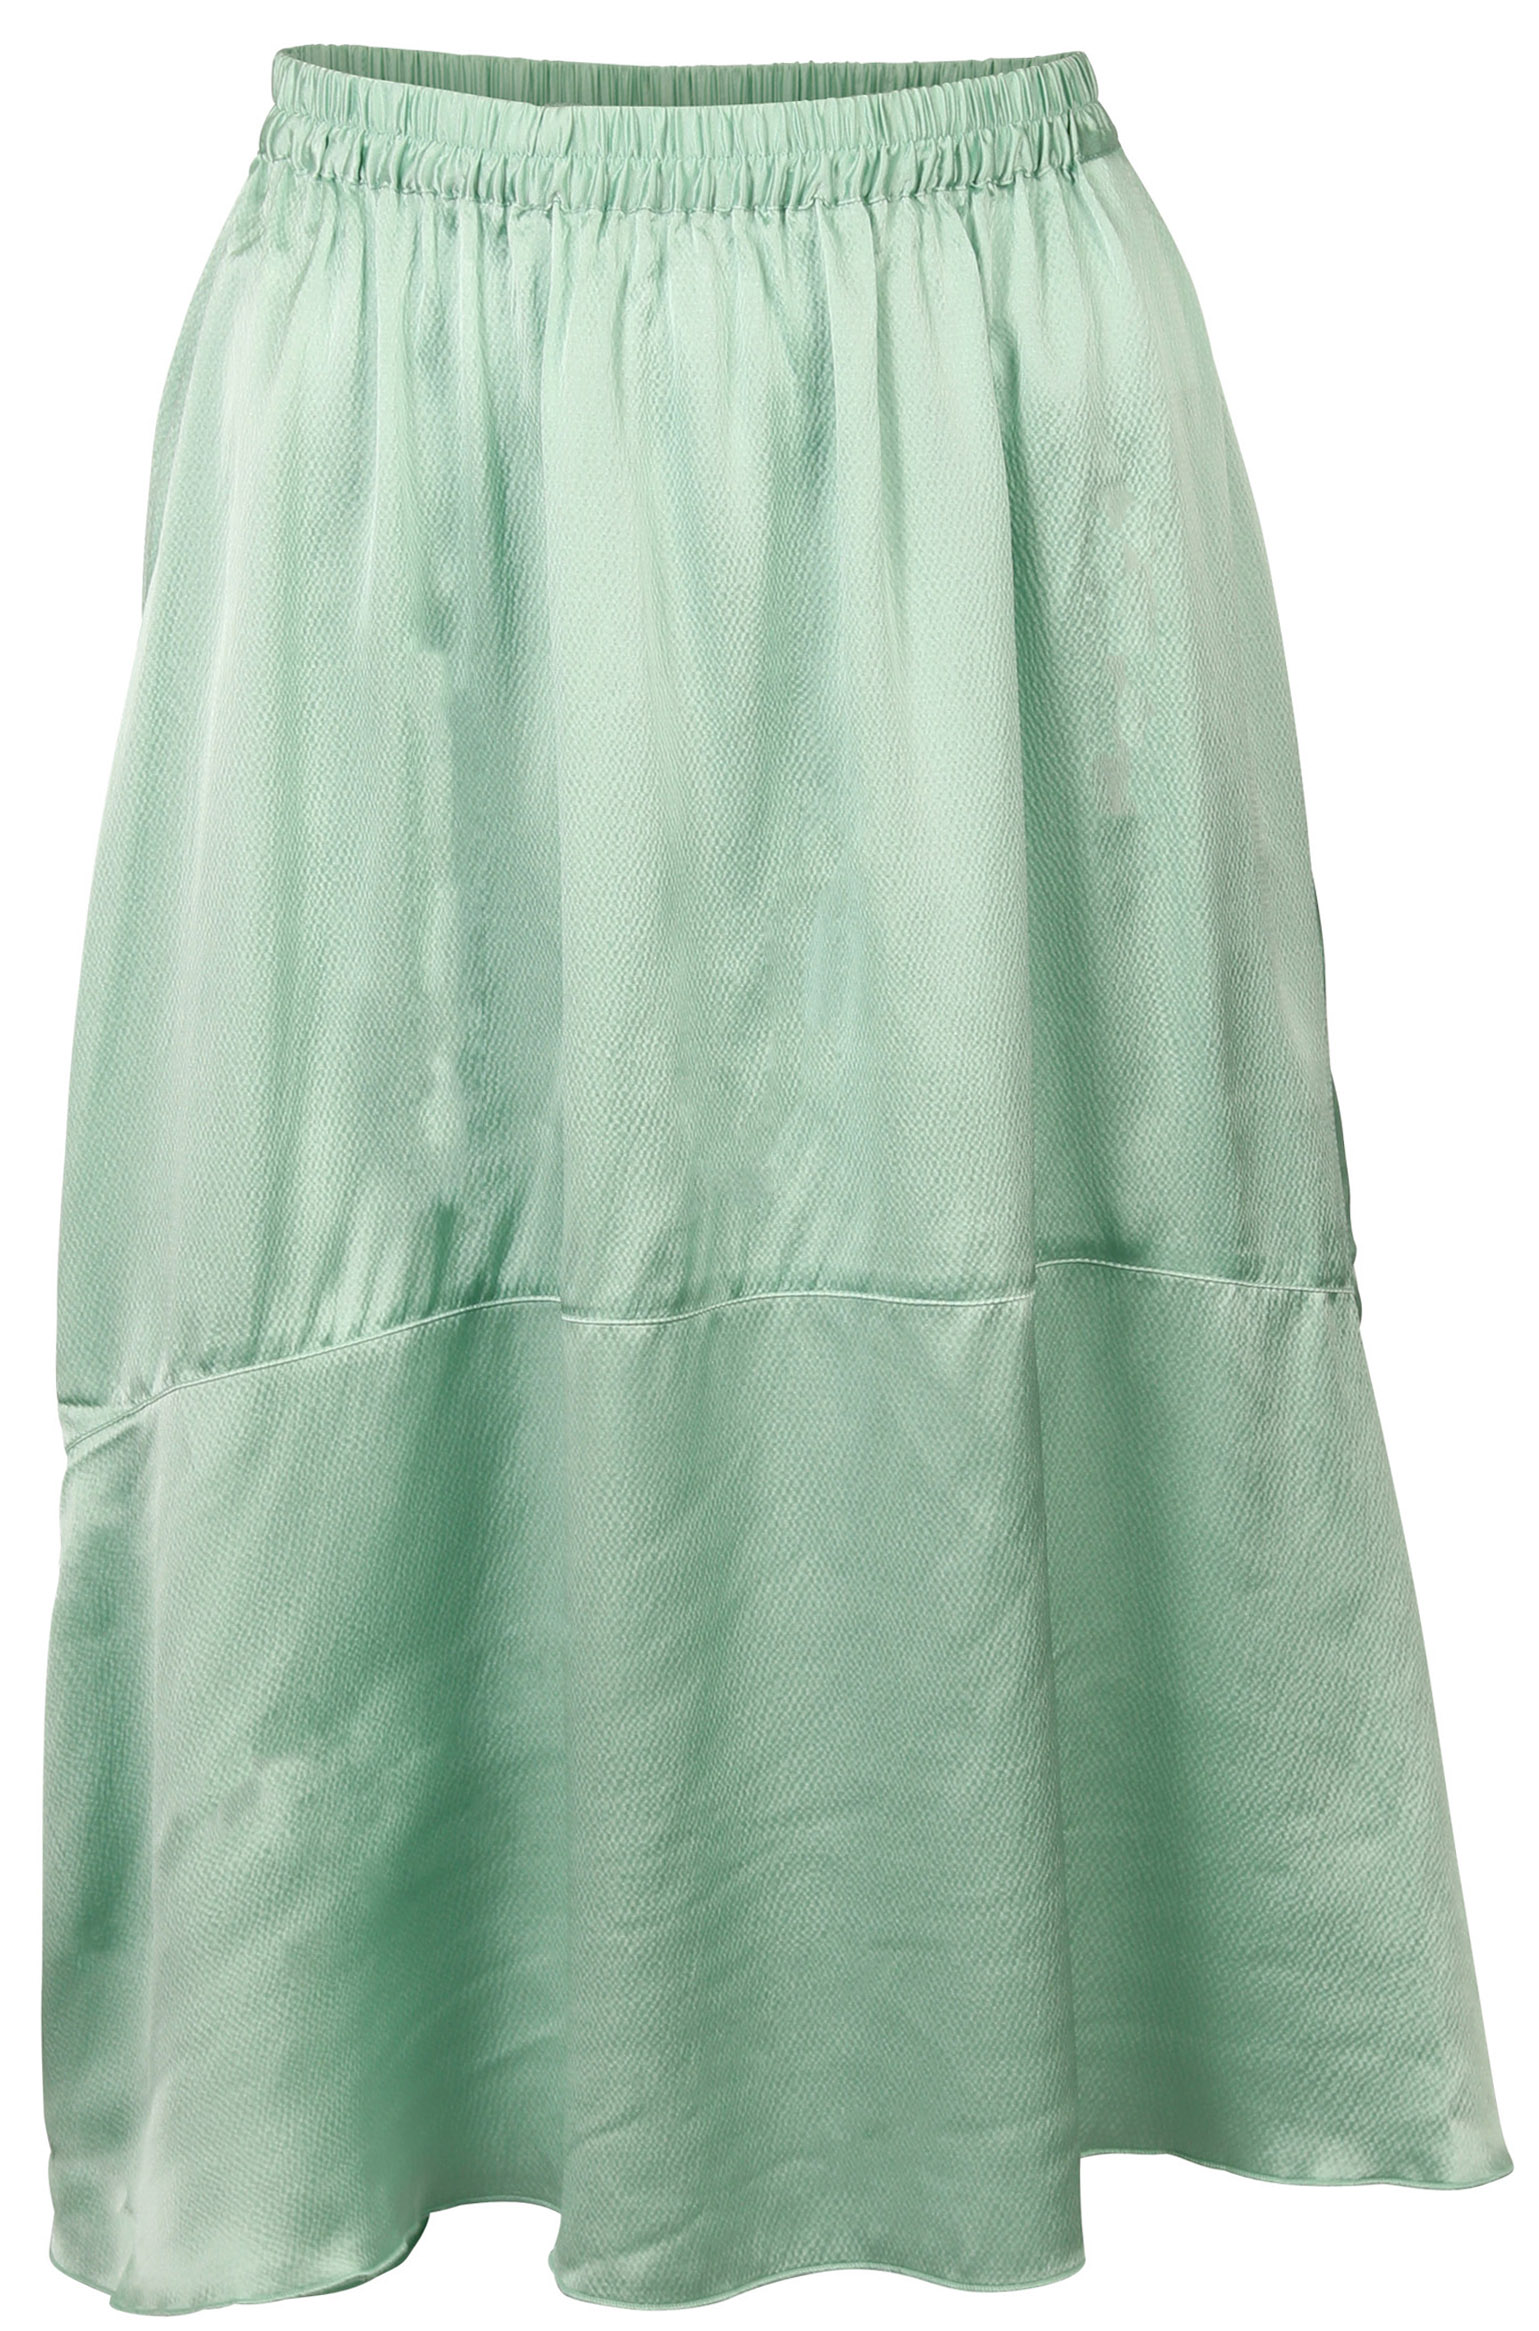 FWSS Skirt Lisbet Jade Green L